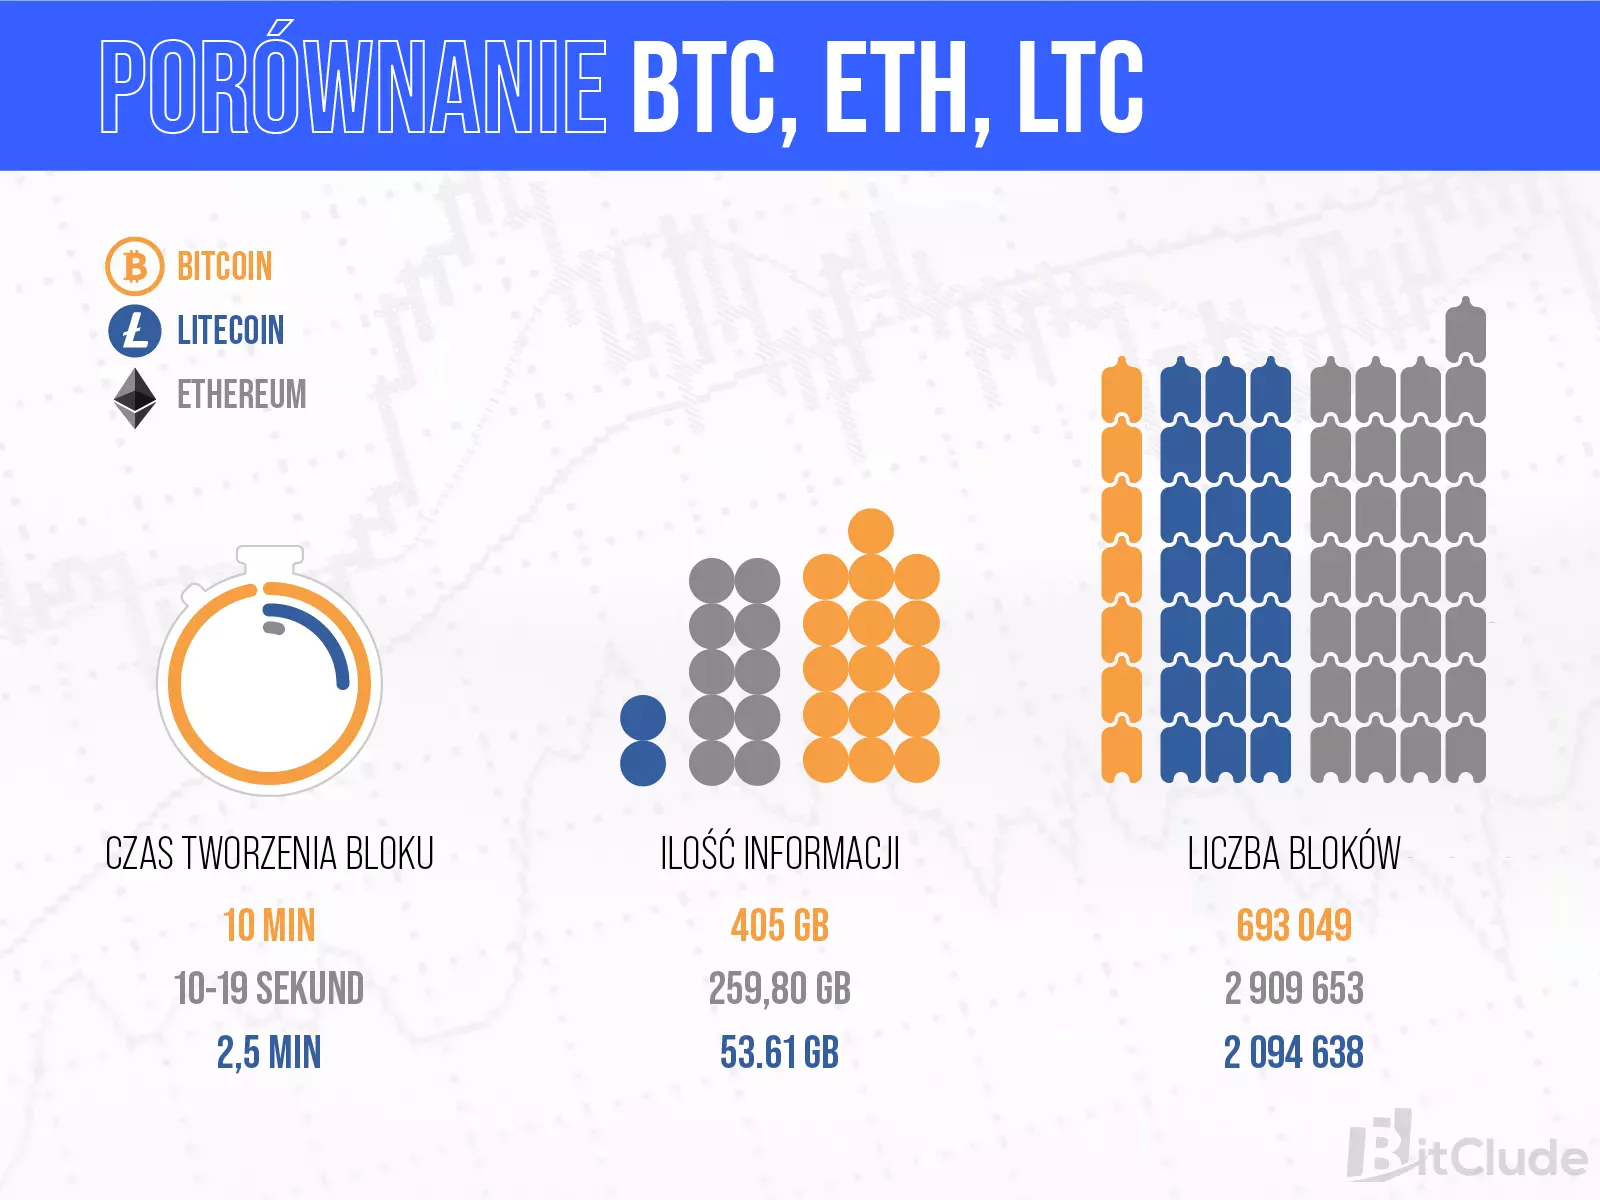 Porównanie Blockchainów Ethereum, Bitcoina i Litecoina.